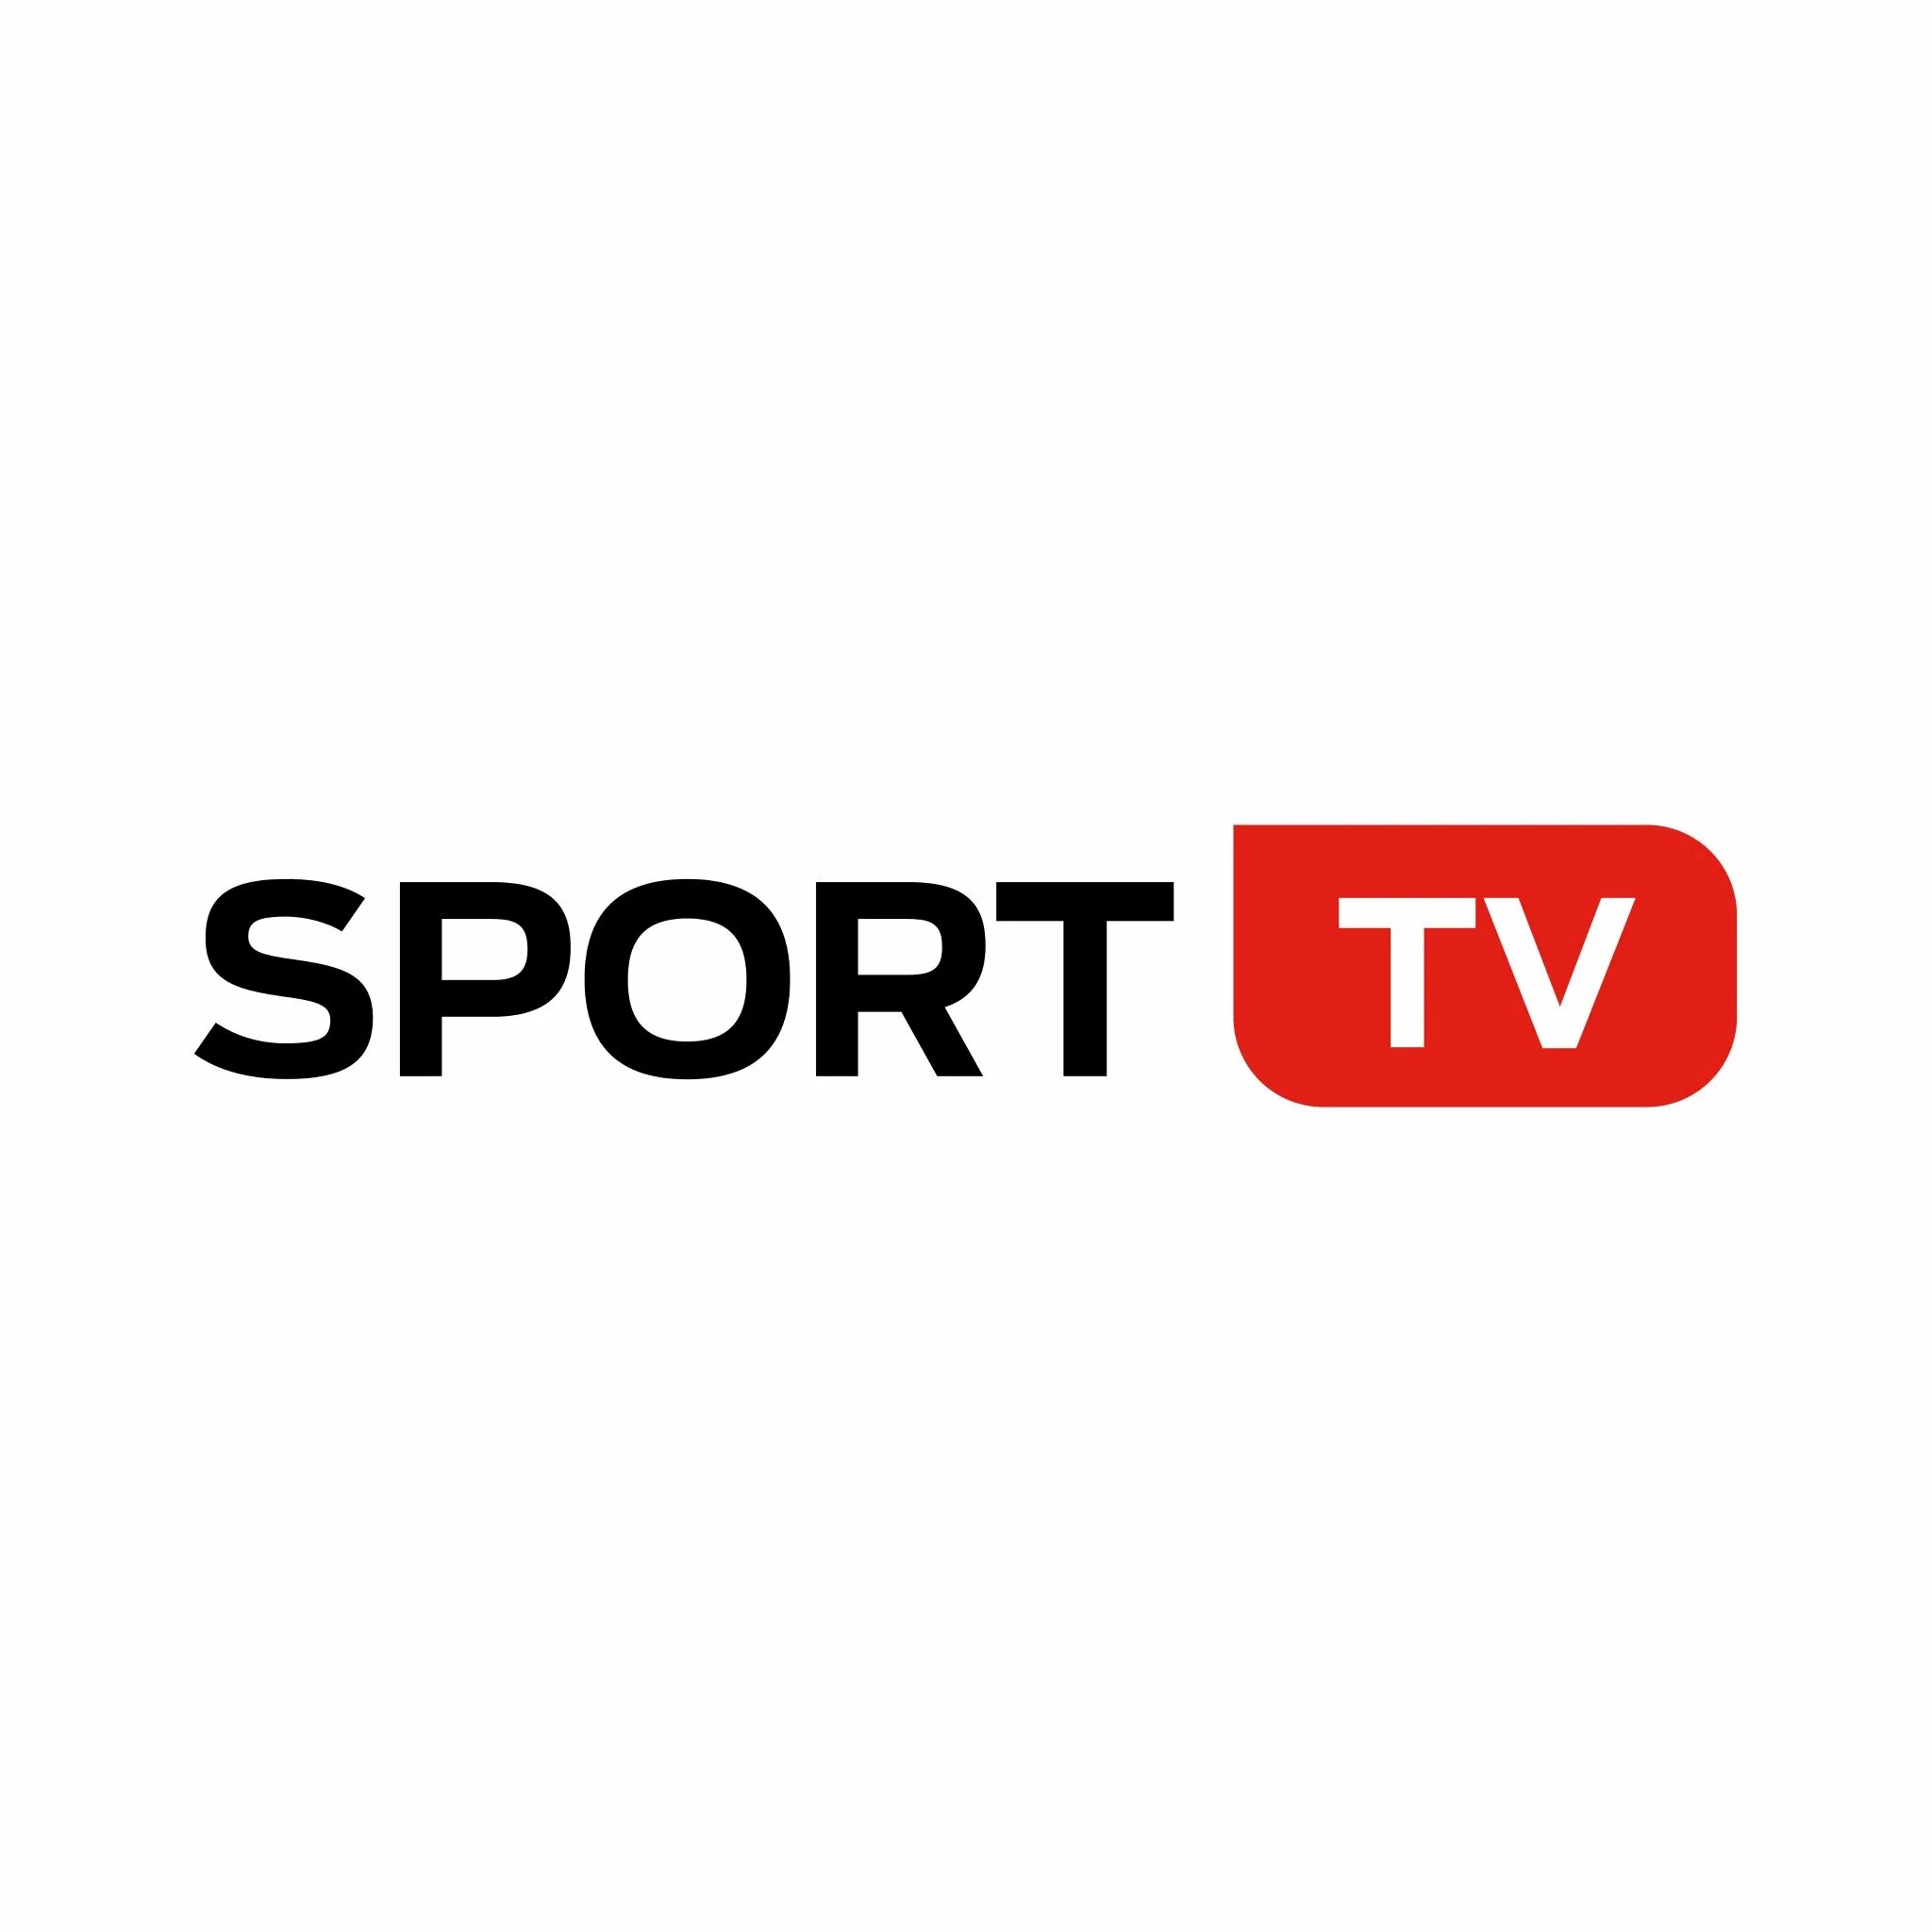 Sport jonli efir uzbek tilida. Спорт TV. Логотип спорт ТВ. Спорт ТВ уз.